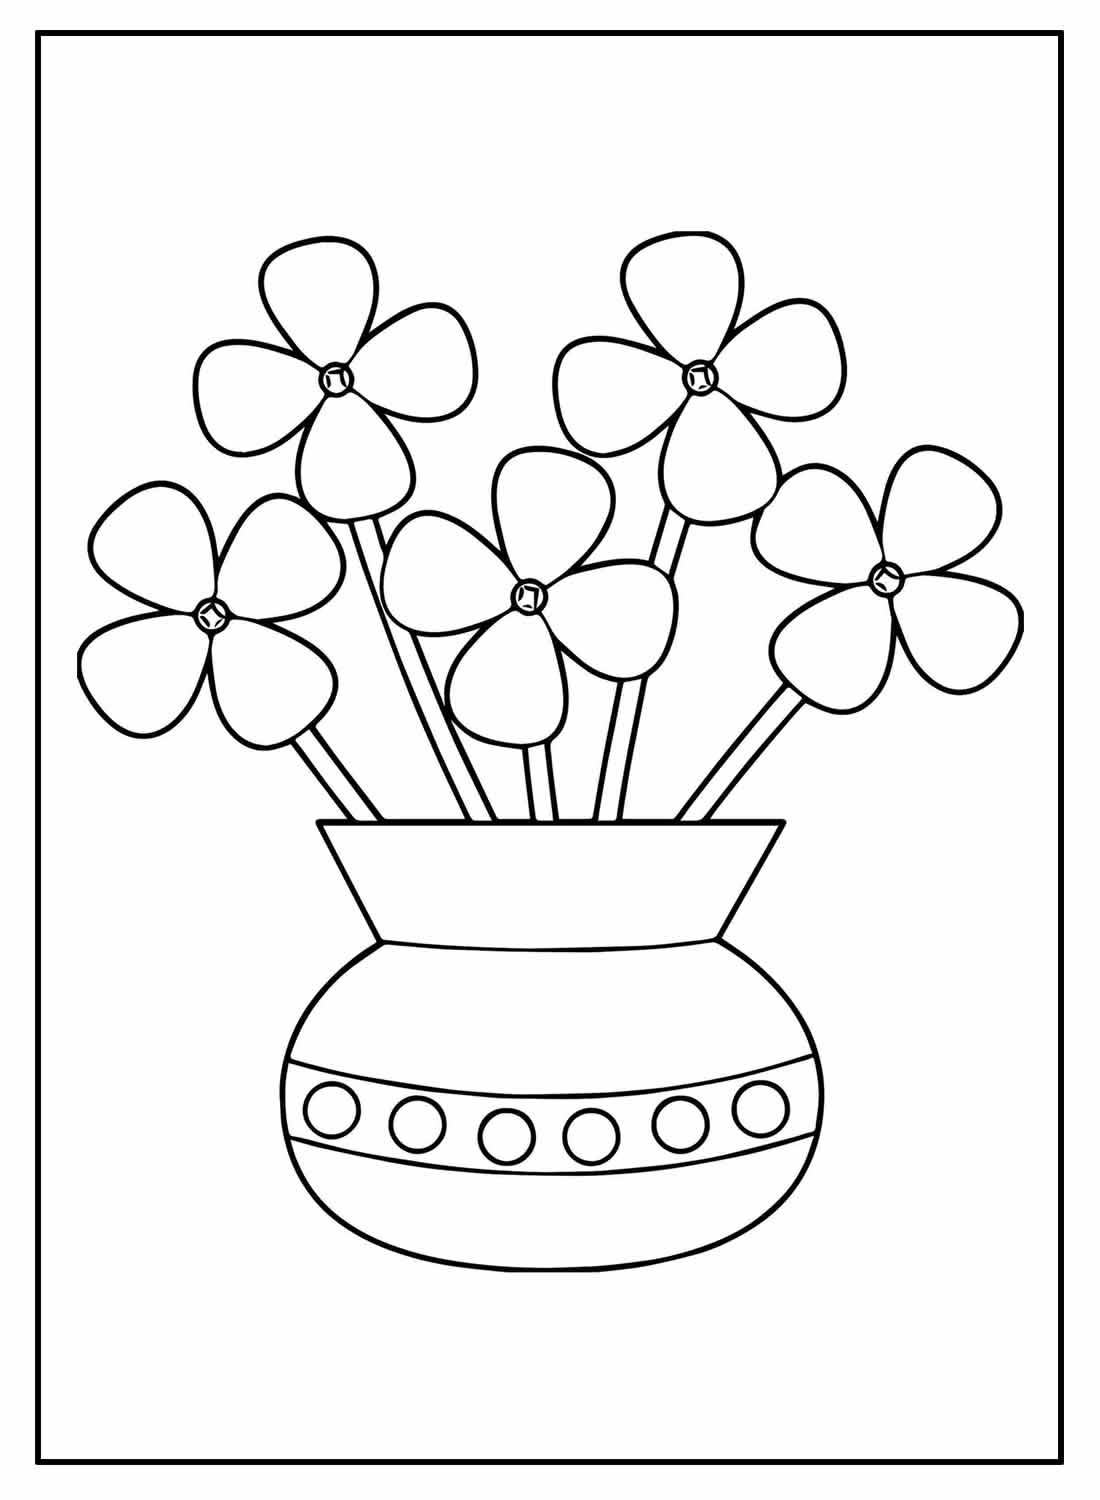 Рисунок на тему букет цветов в вазе